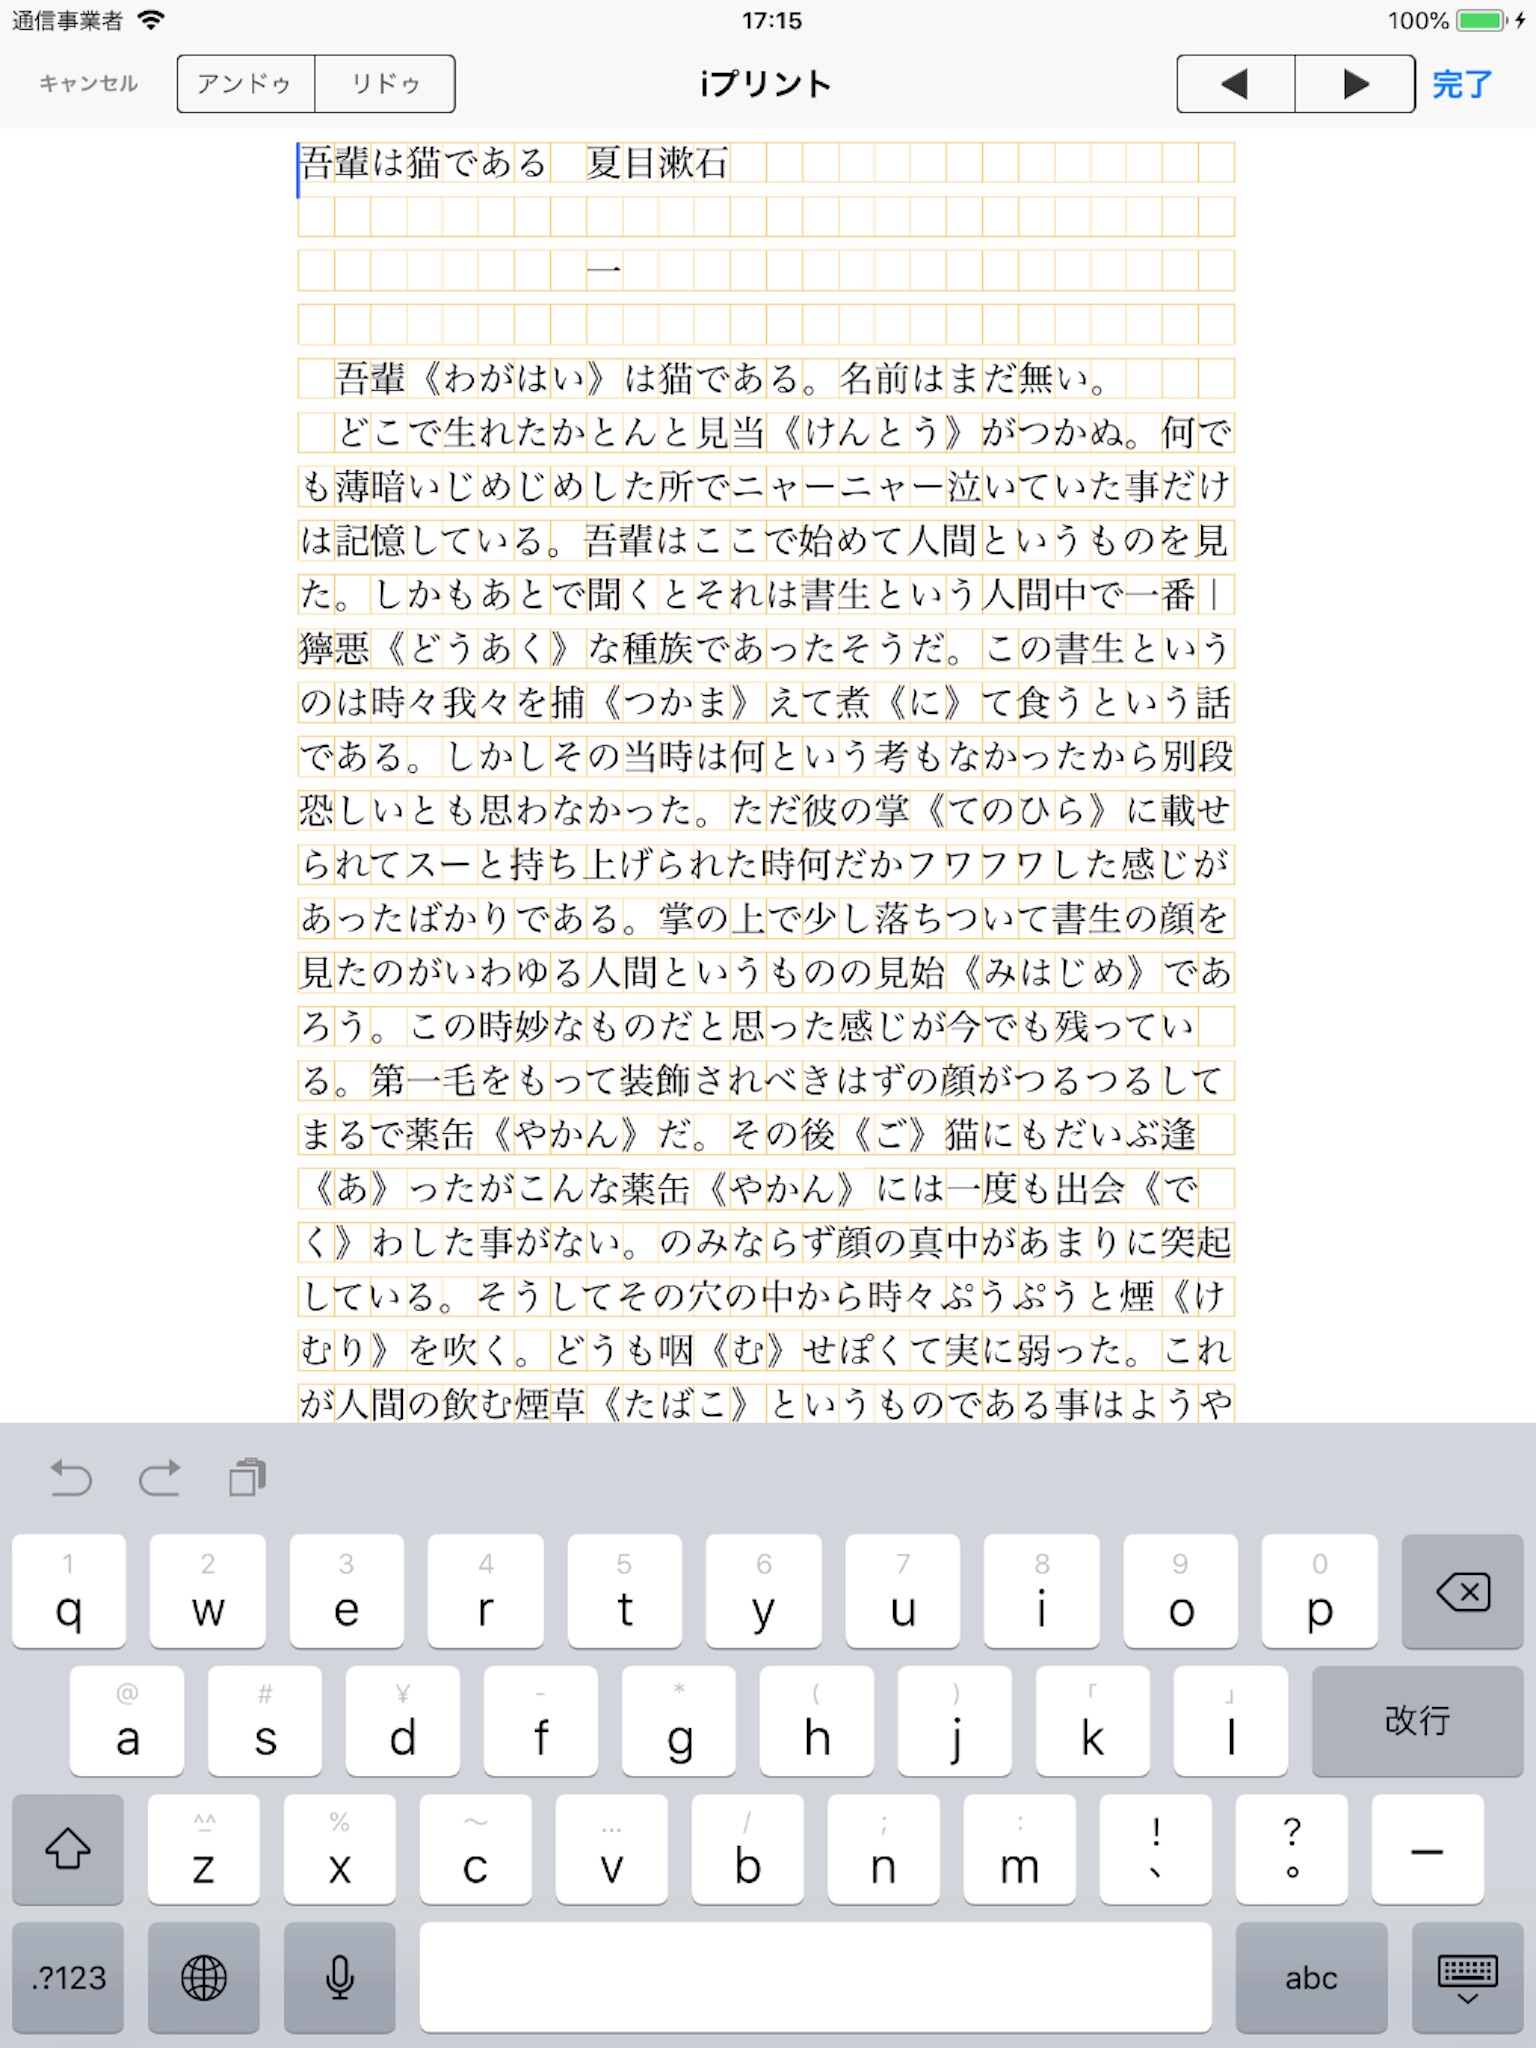 iPRINT - Text Printing screenshot 3